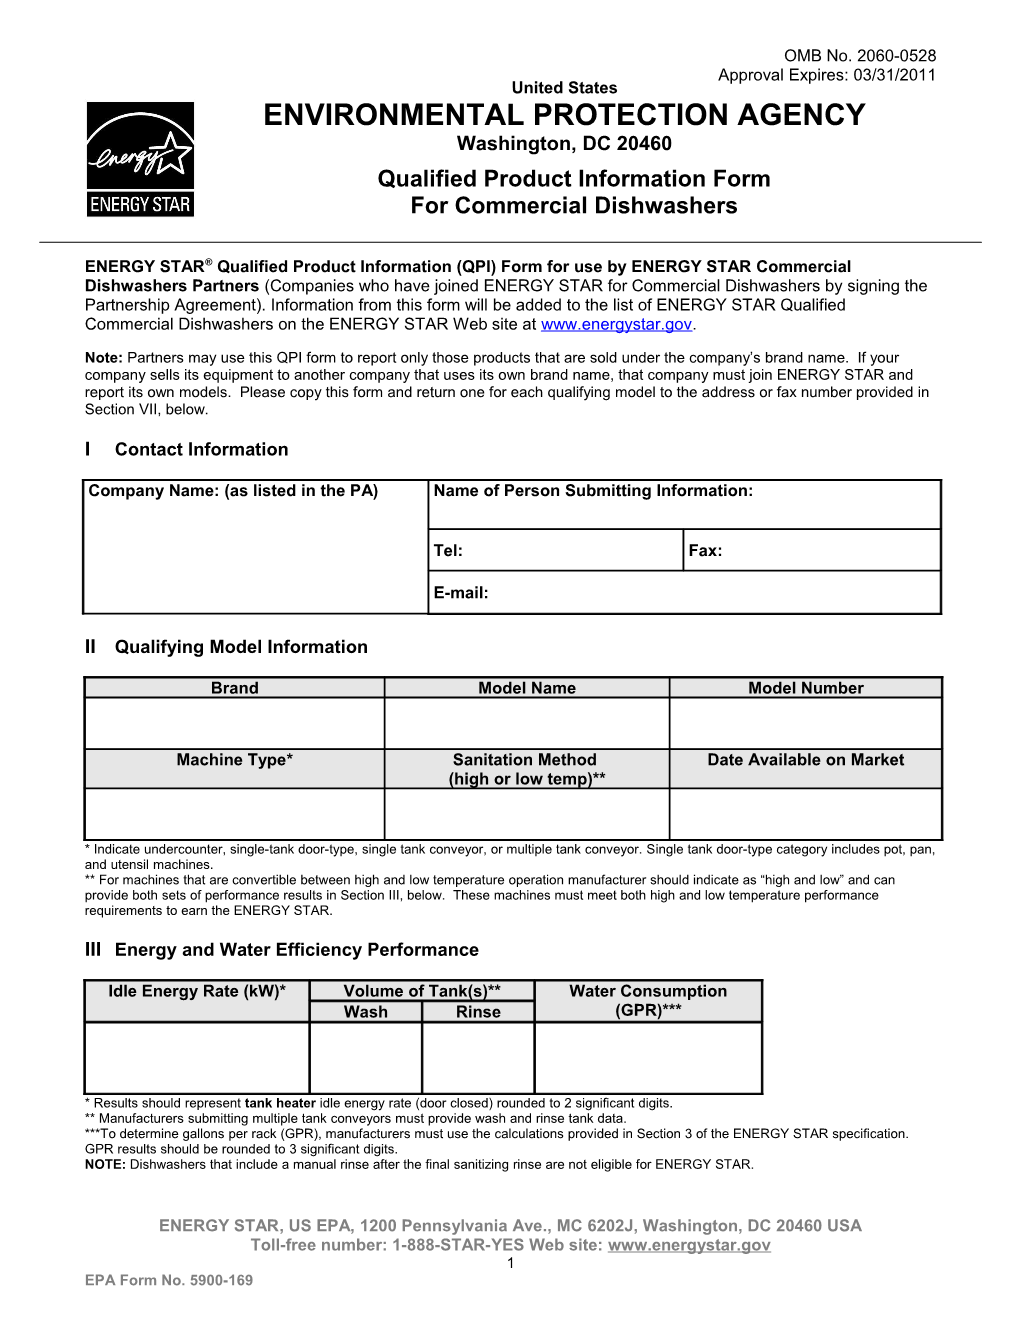 Commercial Dishwashers QPI Form